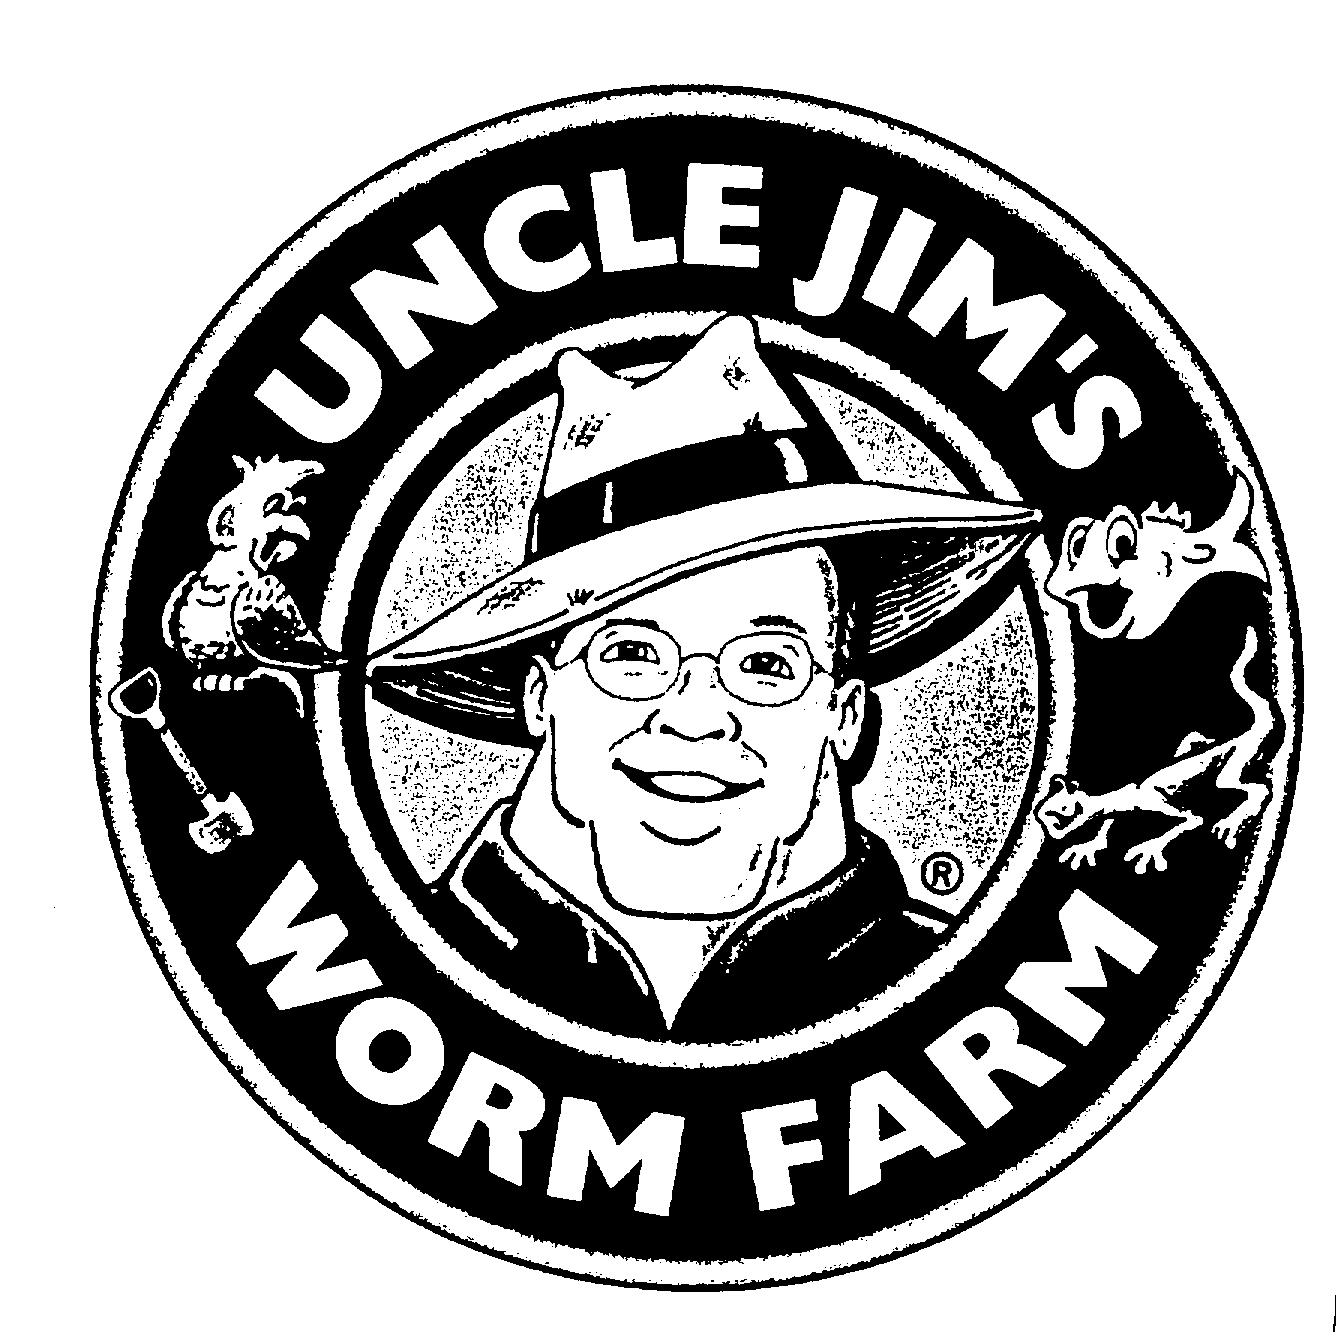 UNCLE JIM'S WORM FARM